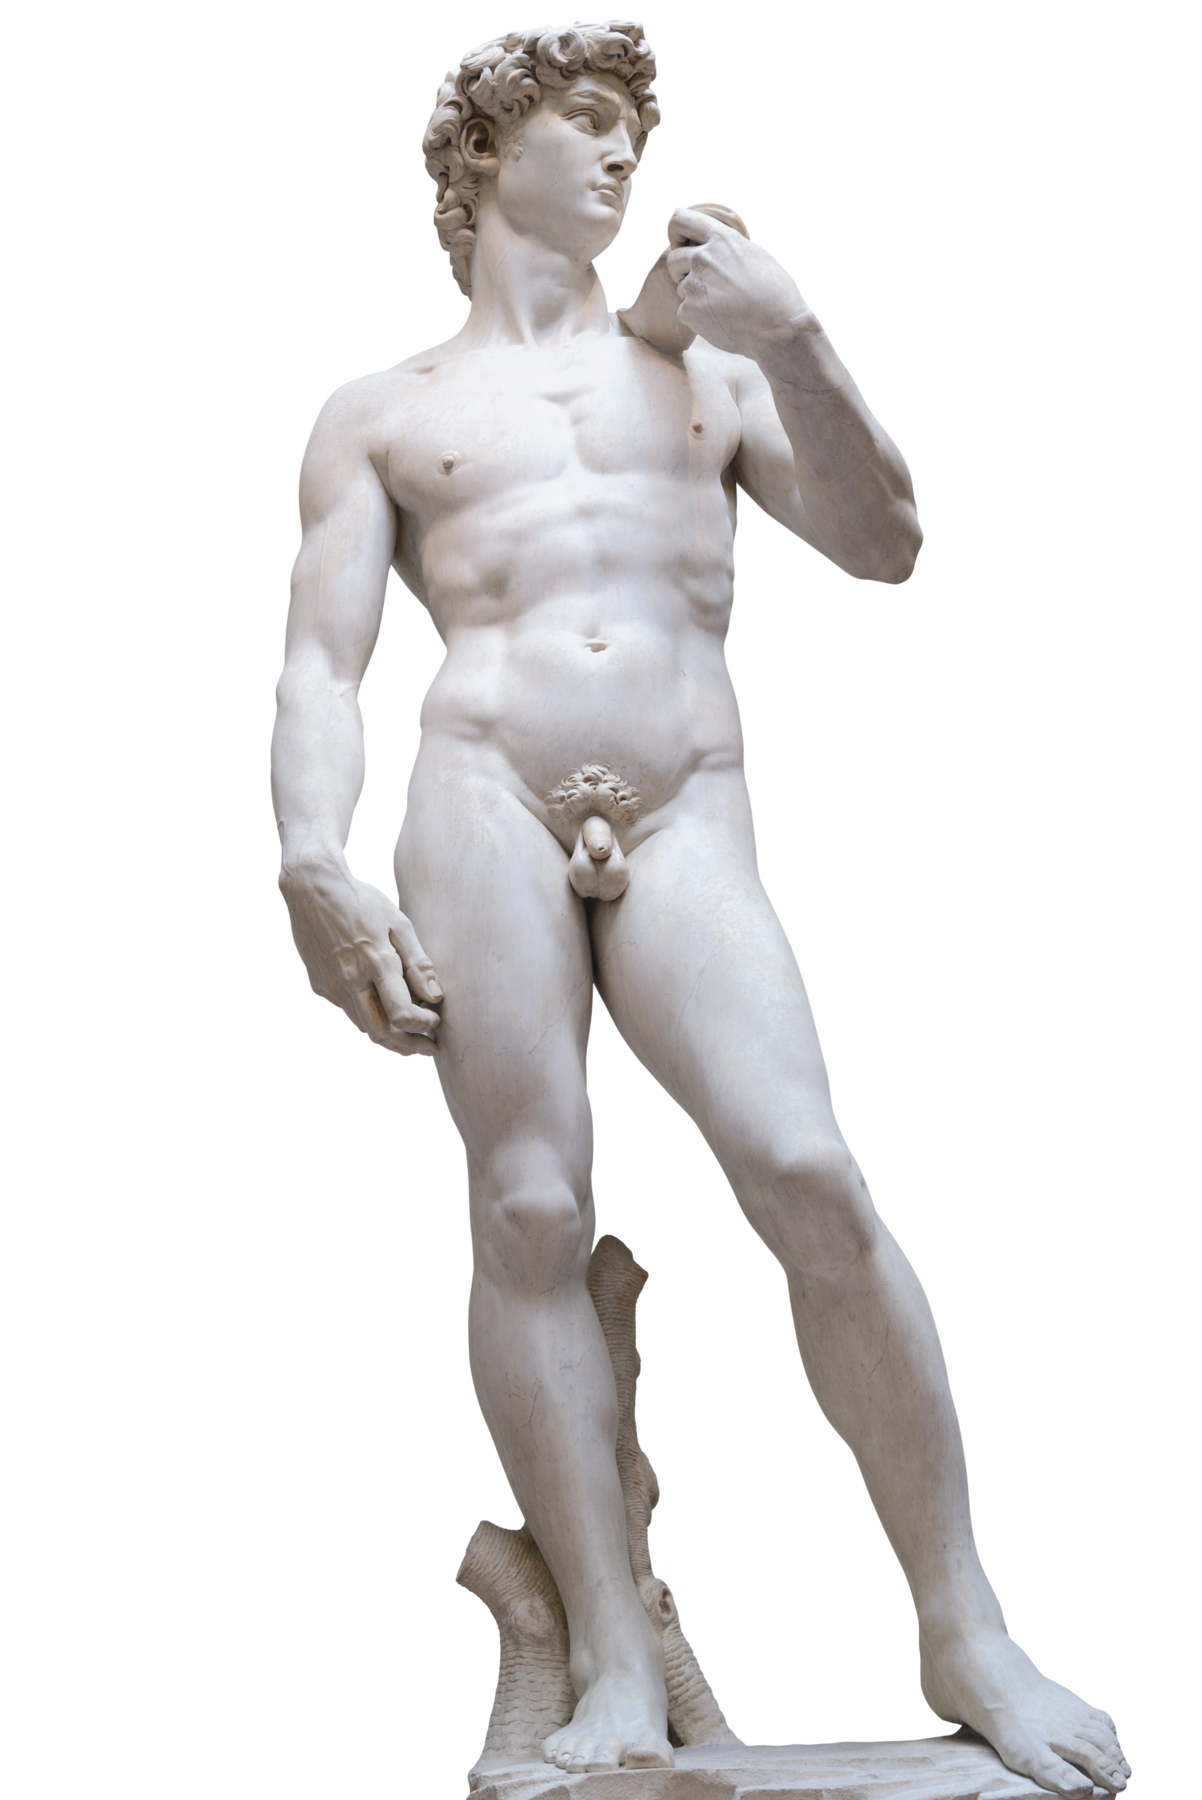 Fotografia. Estátua de mármore de homem nu. Ele está em pé sobre uma pedra, segurando com a mão esquerda, um objeto próximo ao ombro. Ele tem cabelos cacheados e olha para a sua esquerda.